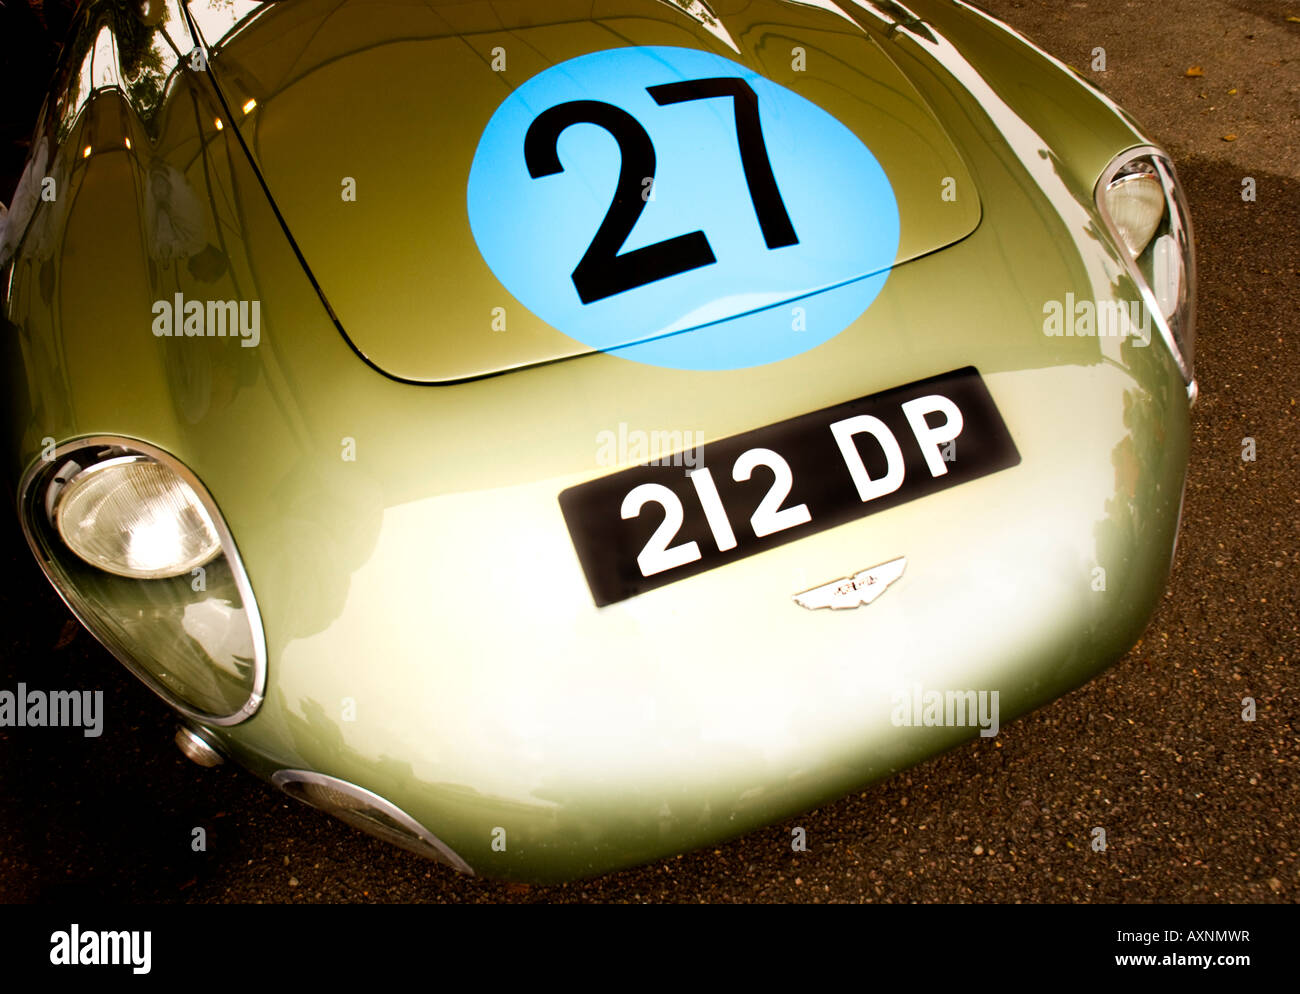 Nr. 27-Platte auf historischen Vintage classic Nostalgie Aston-Martin Aston Martin DBS racing Formel ein F1-Auto-Auto Stockfoto